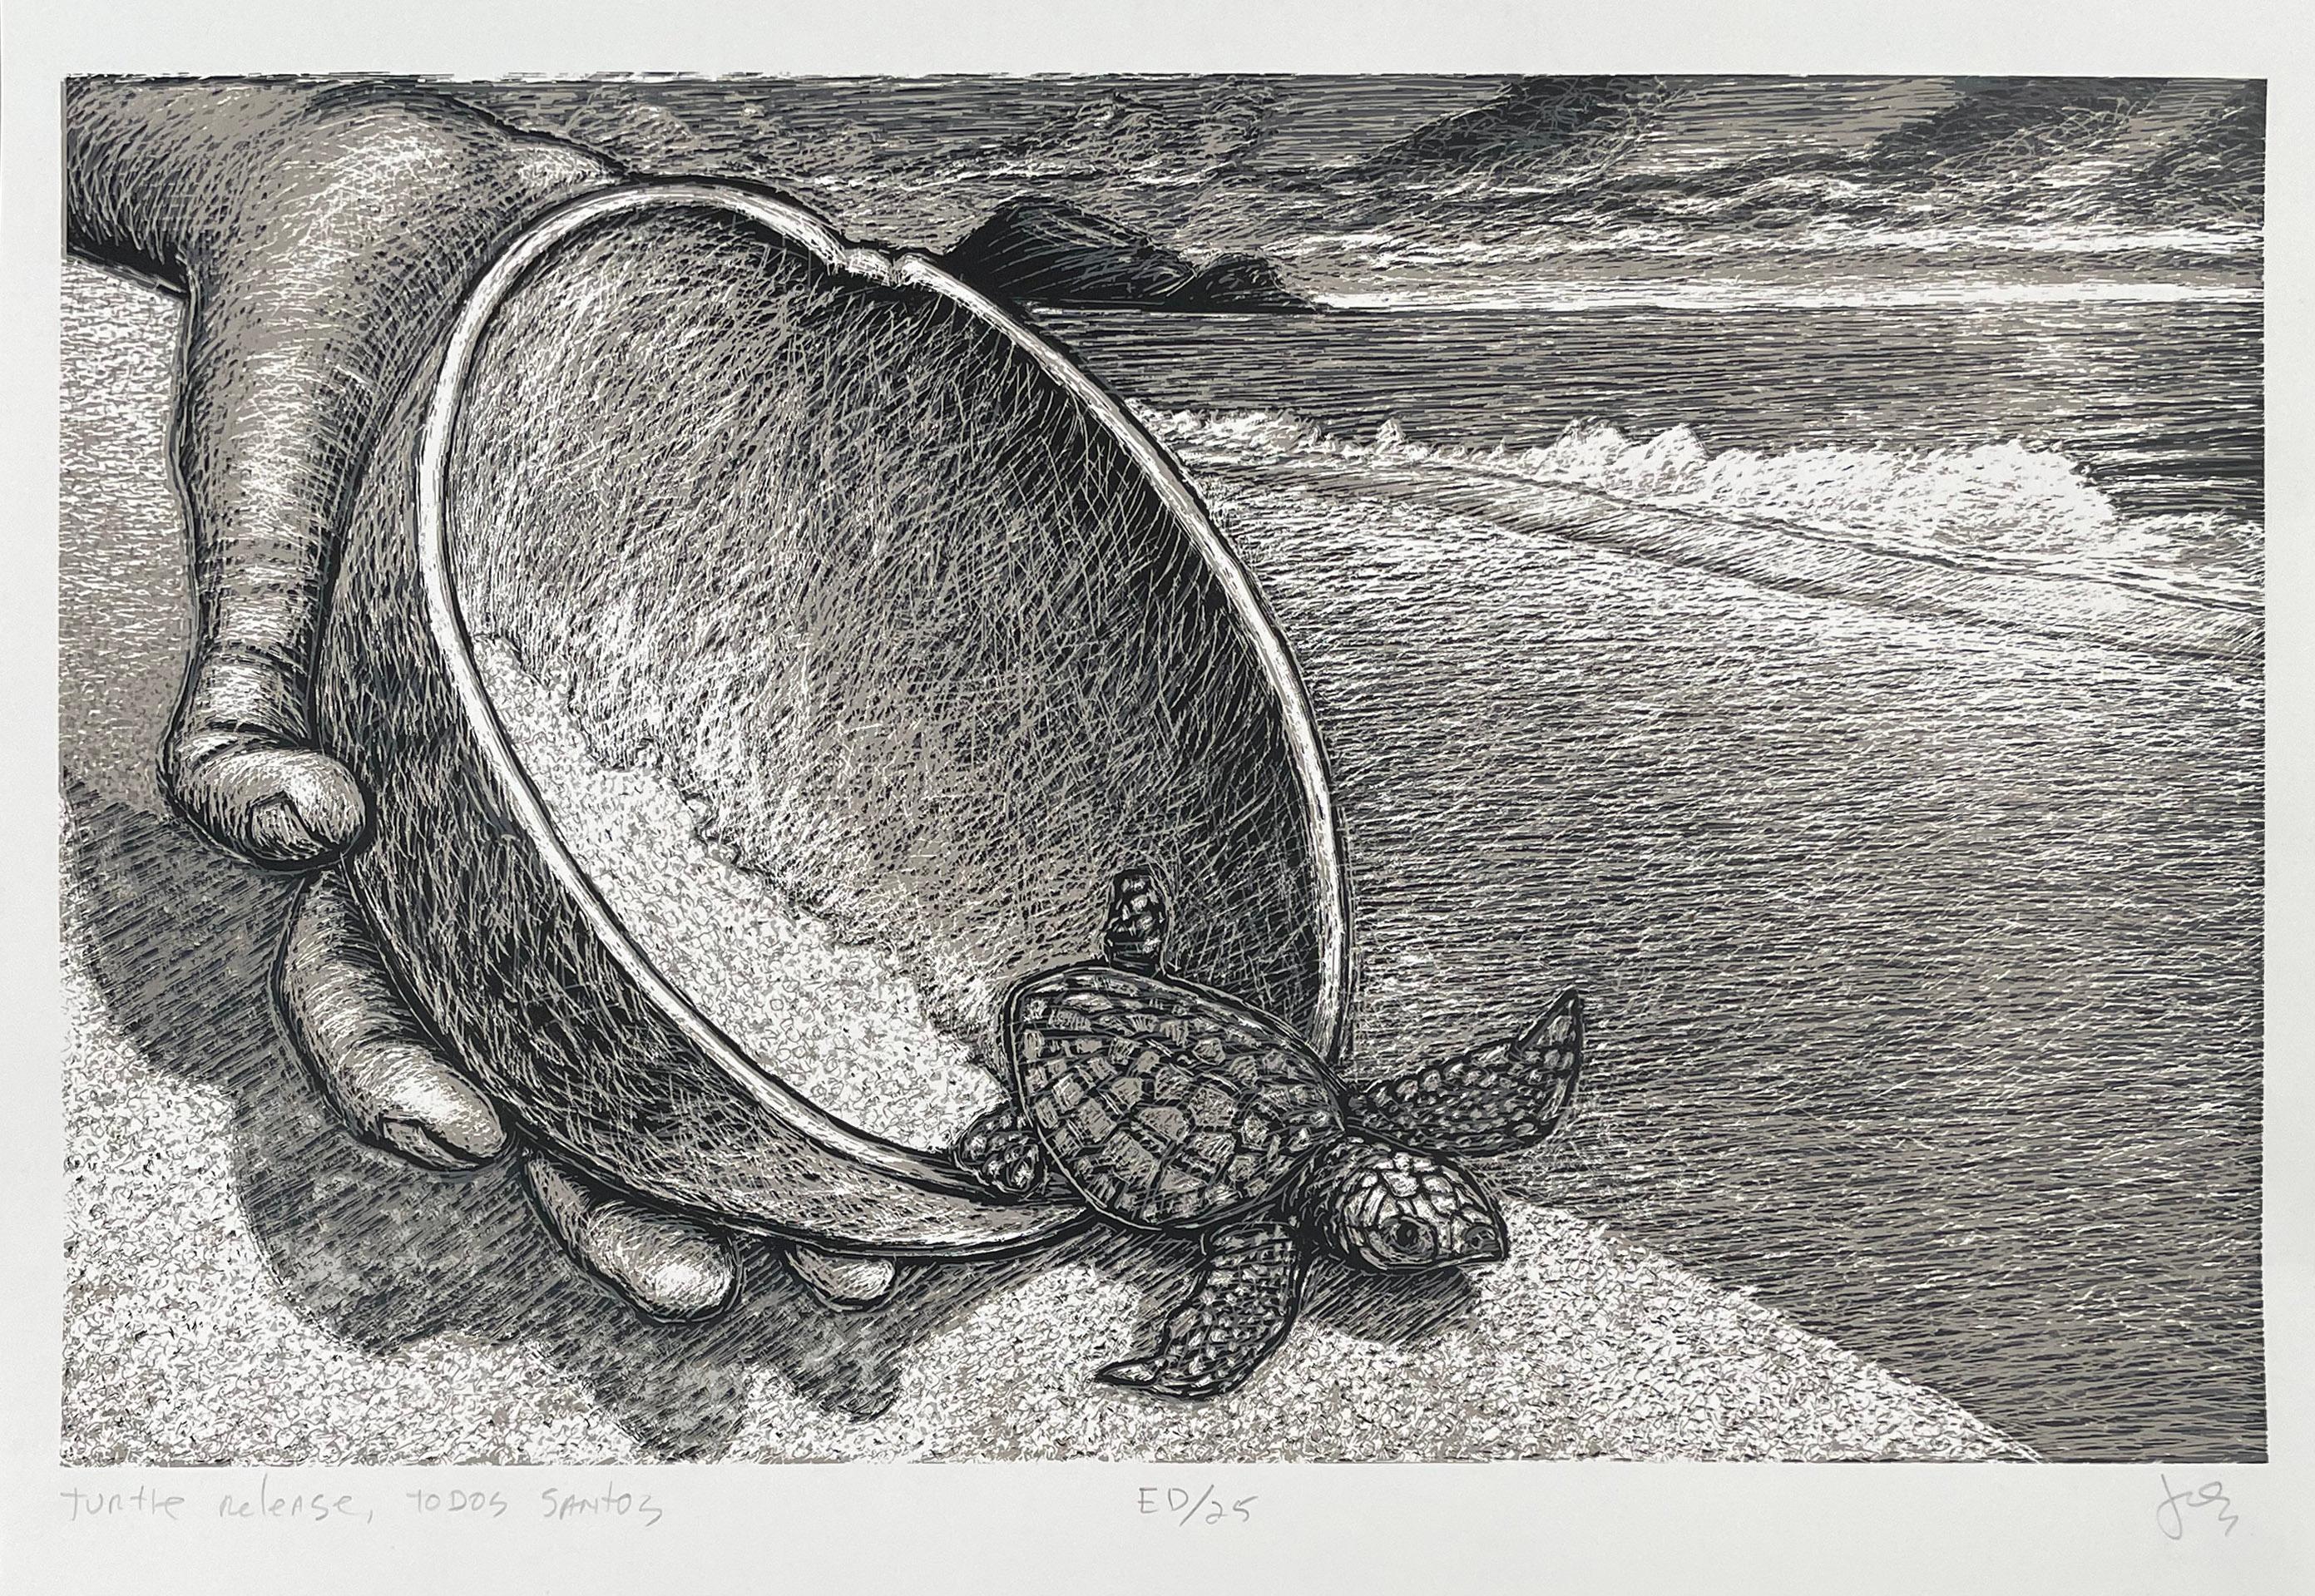 Turtle Release, Todos Santos - Print by Jos Sances